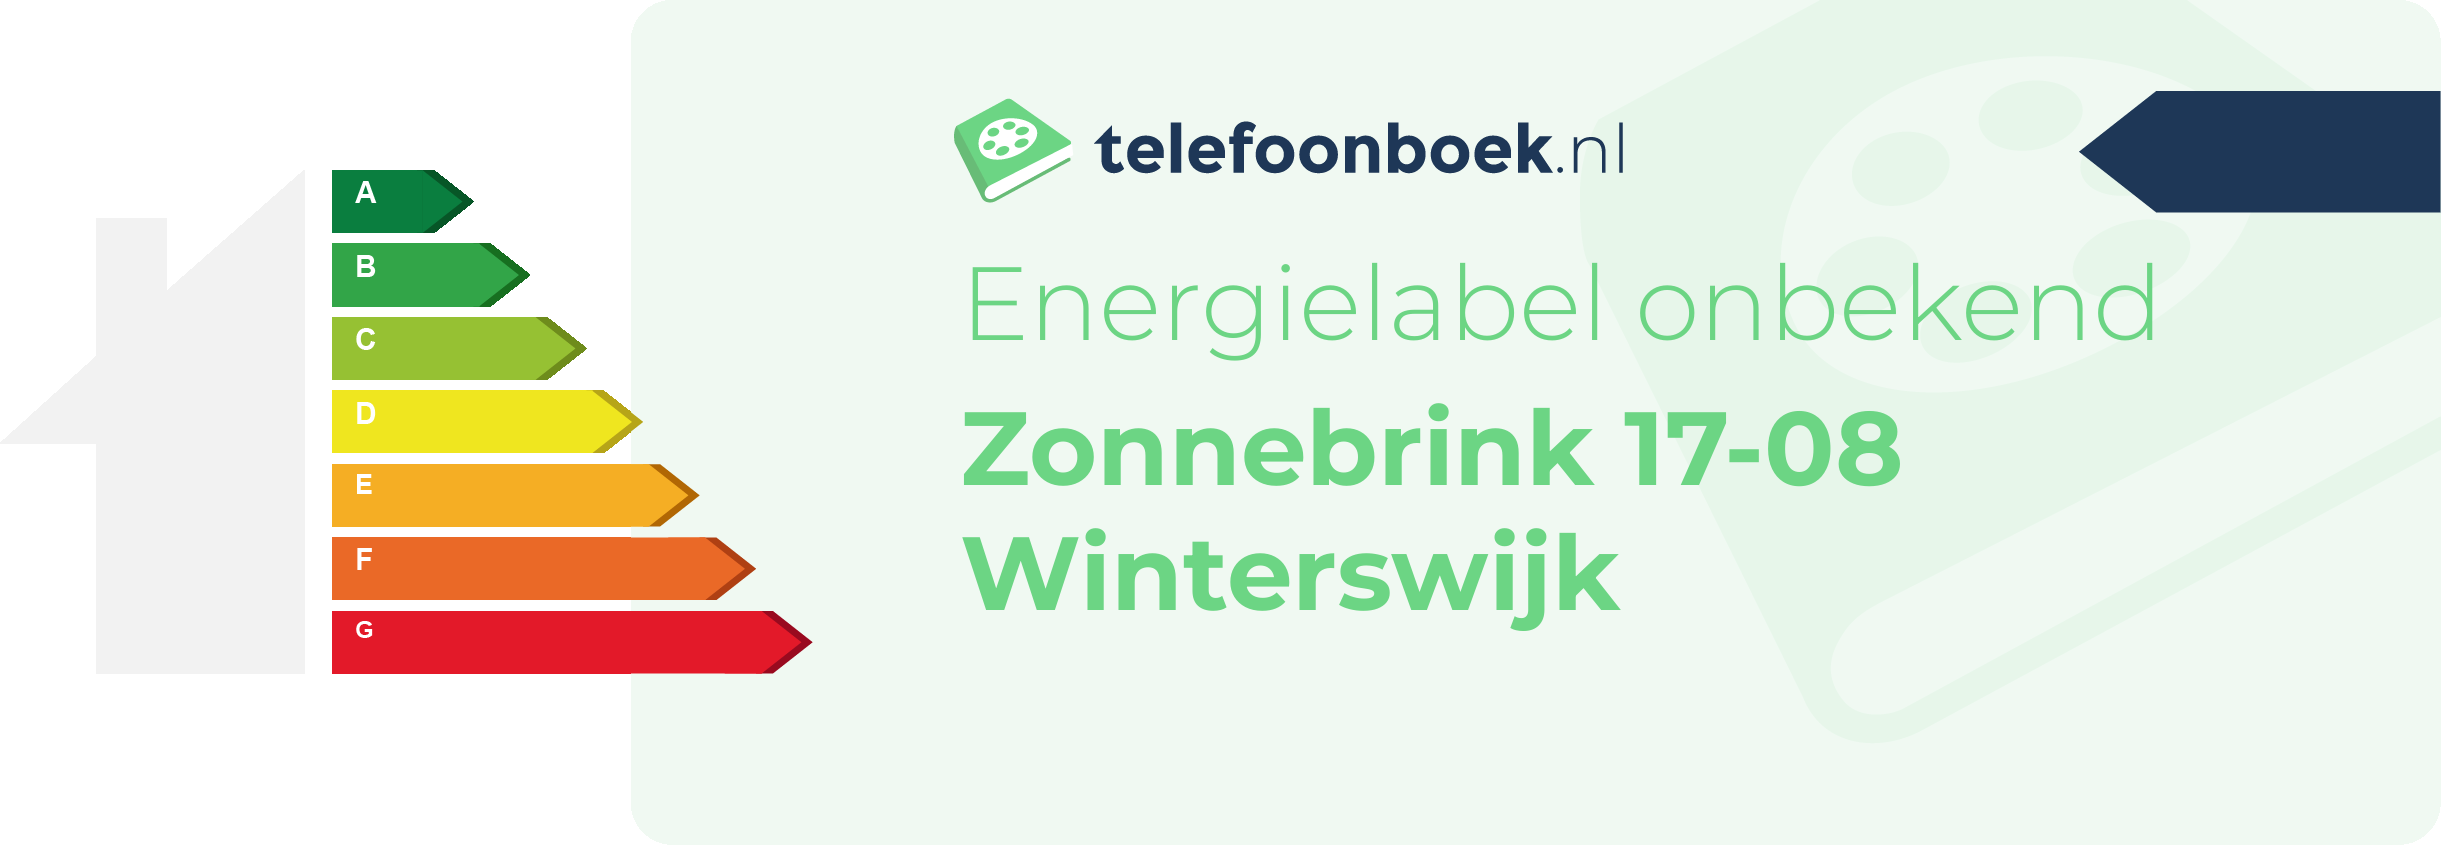 Energielabel Zonnebrink 17-08 Winterswijk